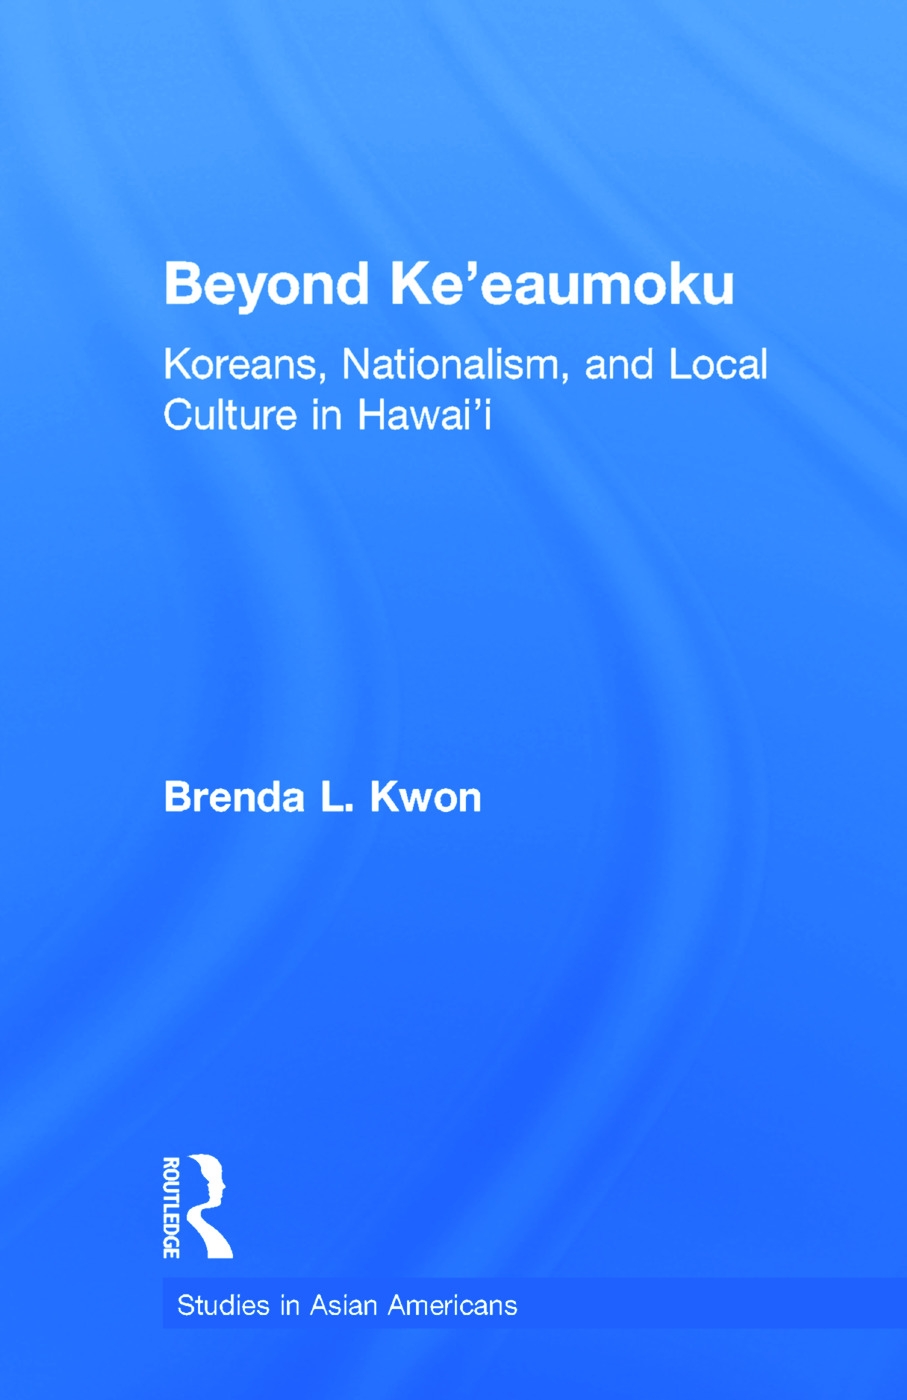 Beyond Ke’eaumoku: Koreans, Nationalism, and Local Culture in Hawai’i